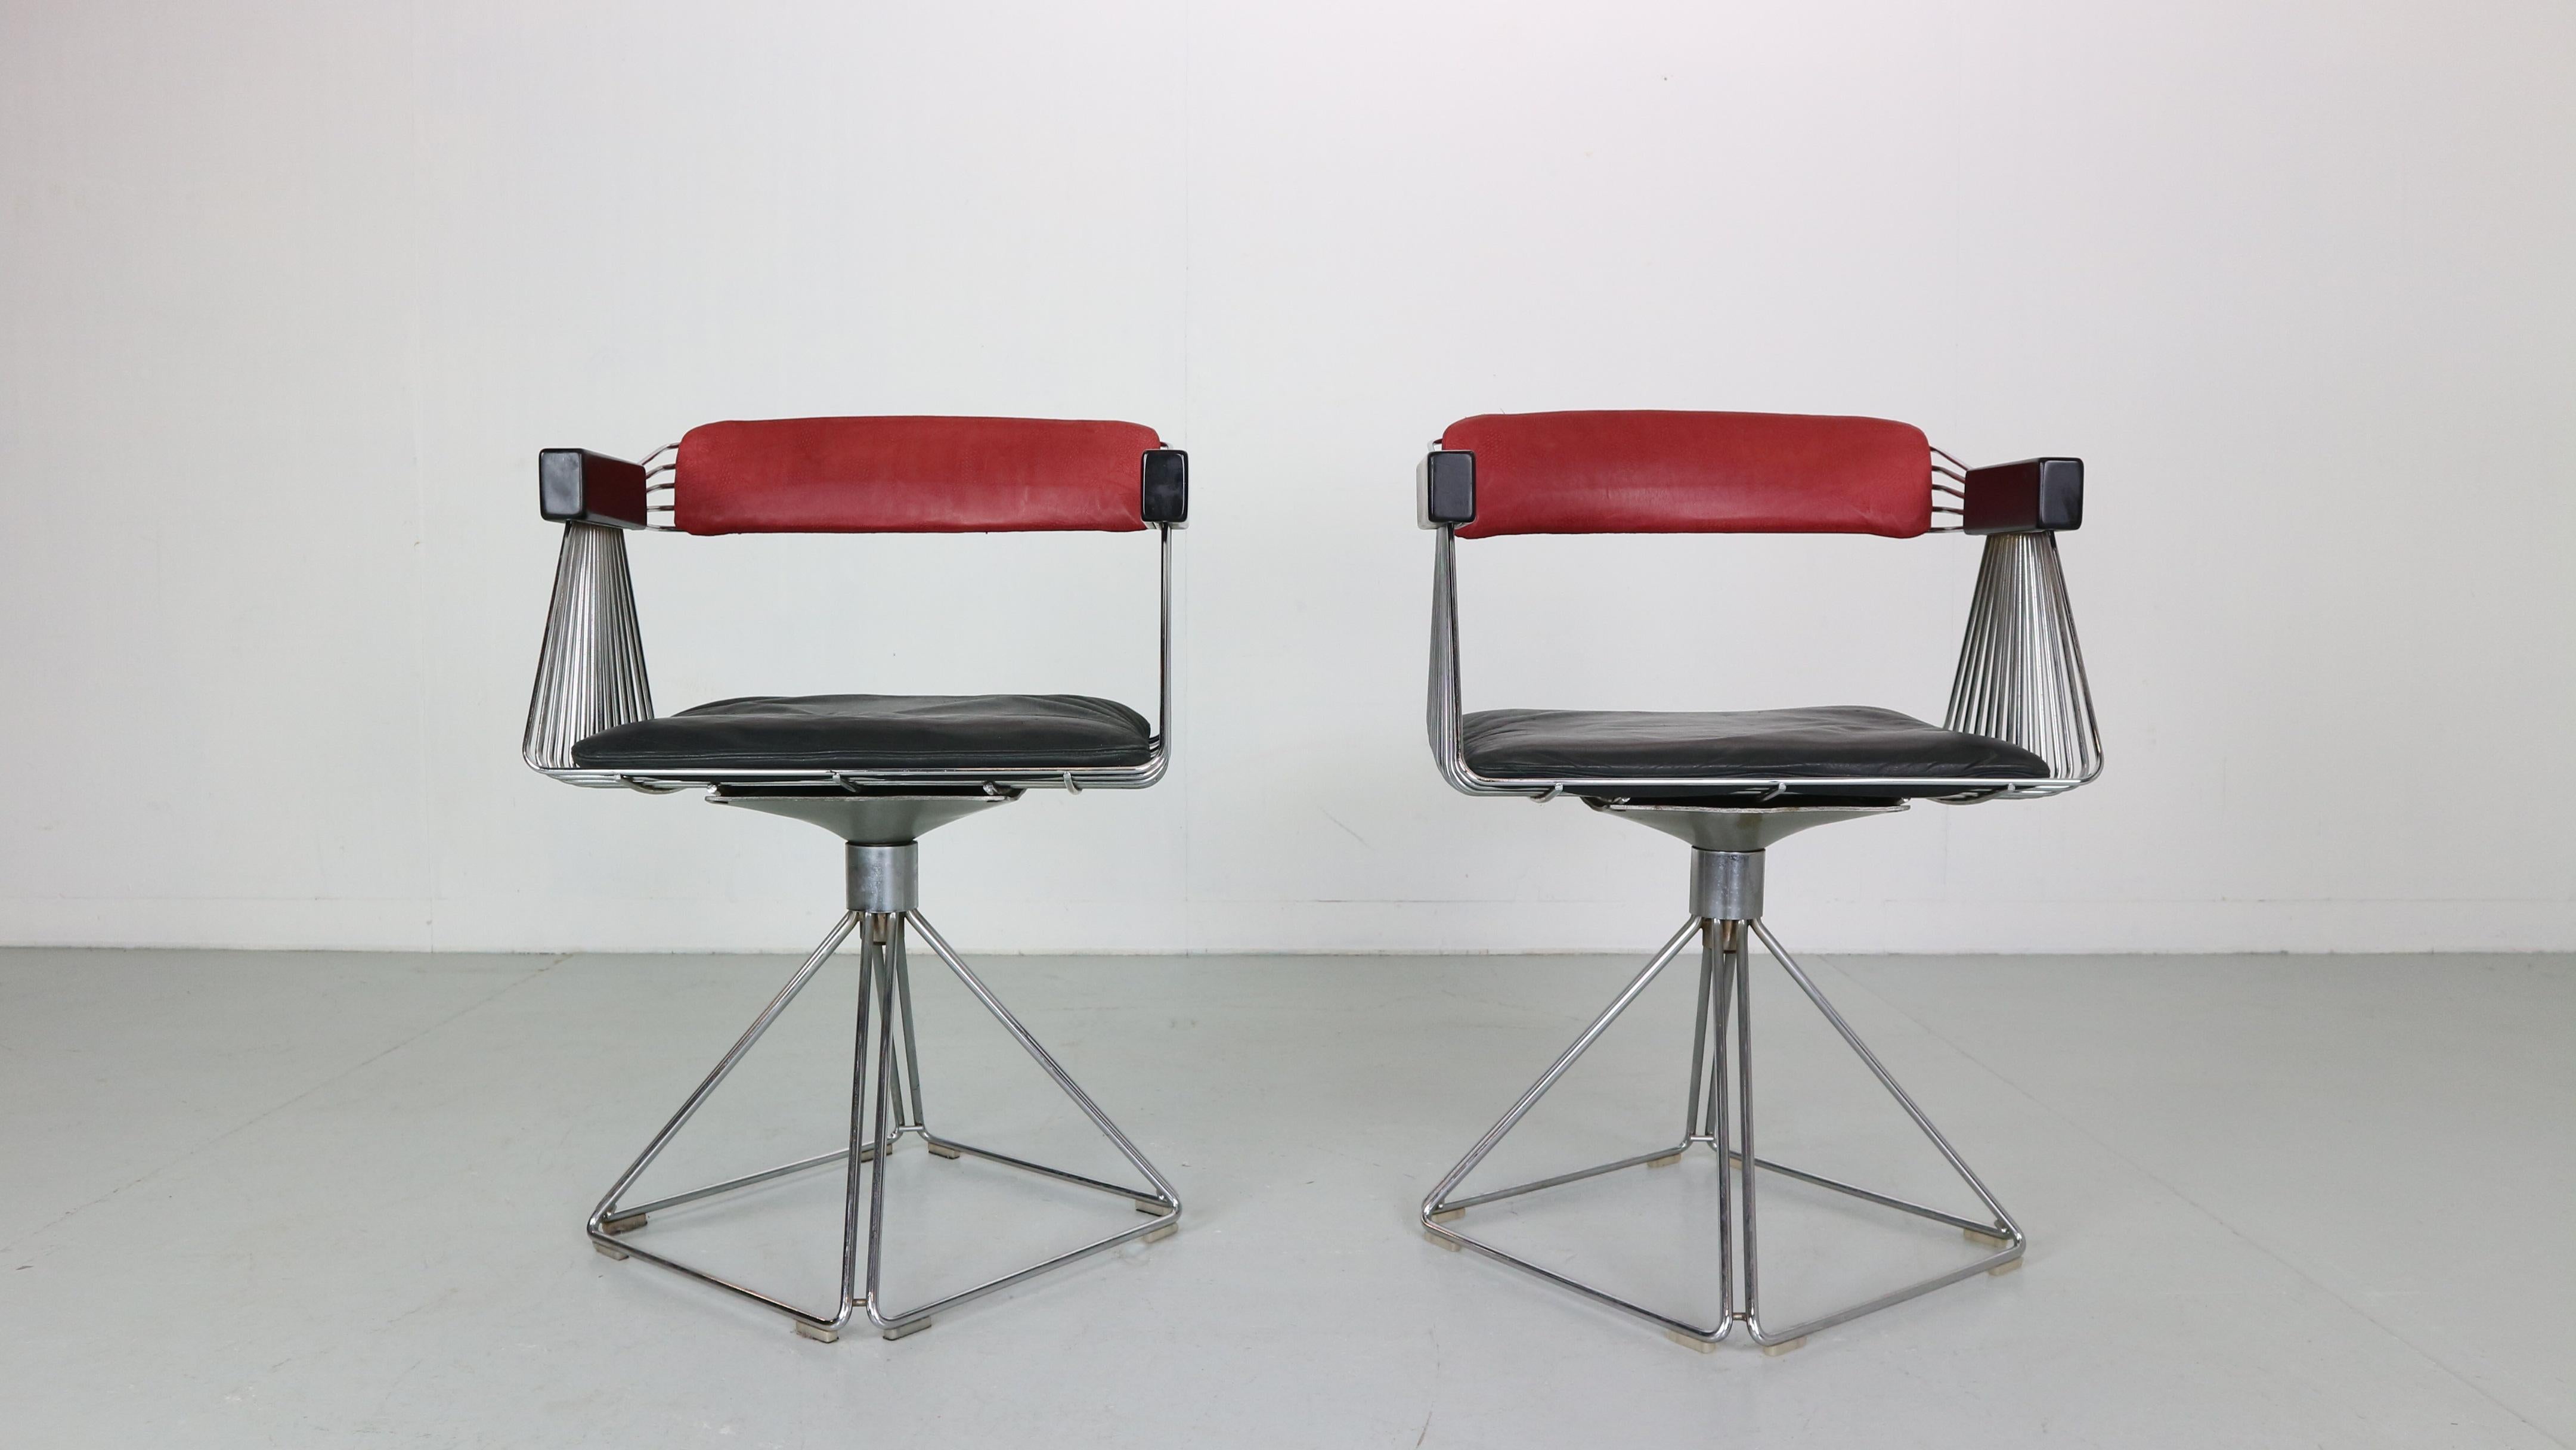 Modernes 2er-Set aus der Mitte des Jahrhunderts, Rudi Verelst für Novalux, Belgien, 1974.
Die  Sessel 'Delta', verchromtes Metall, lackiertes Holz und zweifarbiger Lederstoff.


Das Modell besteht aus einem verchromten Metallrahmen mit einem